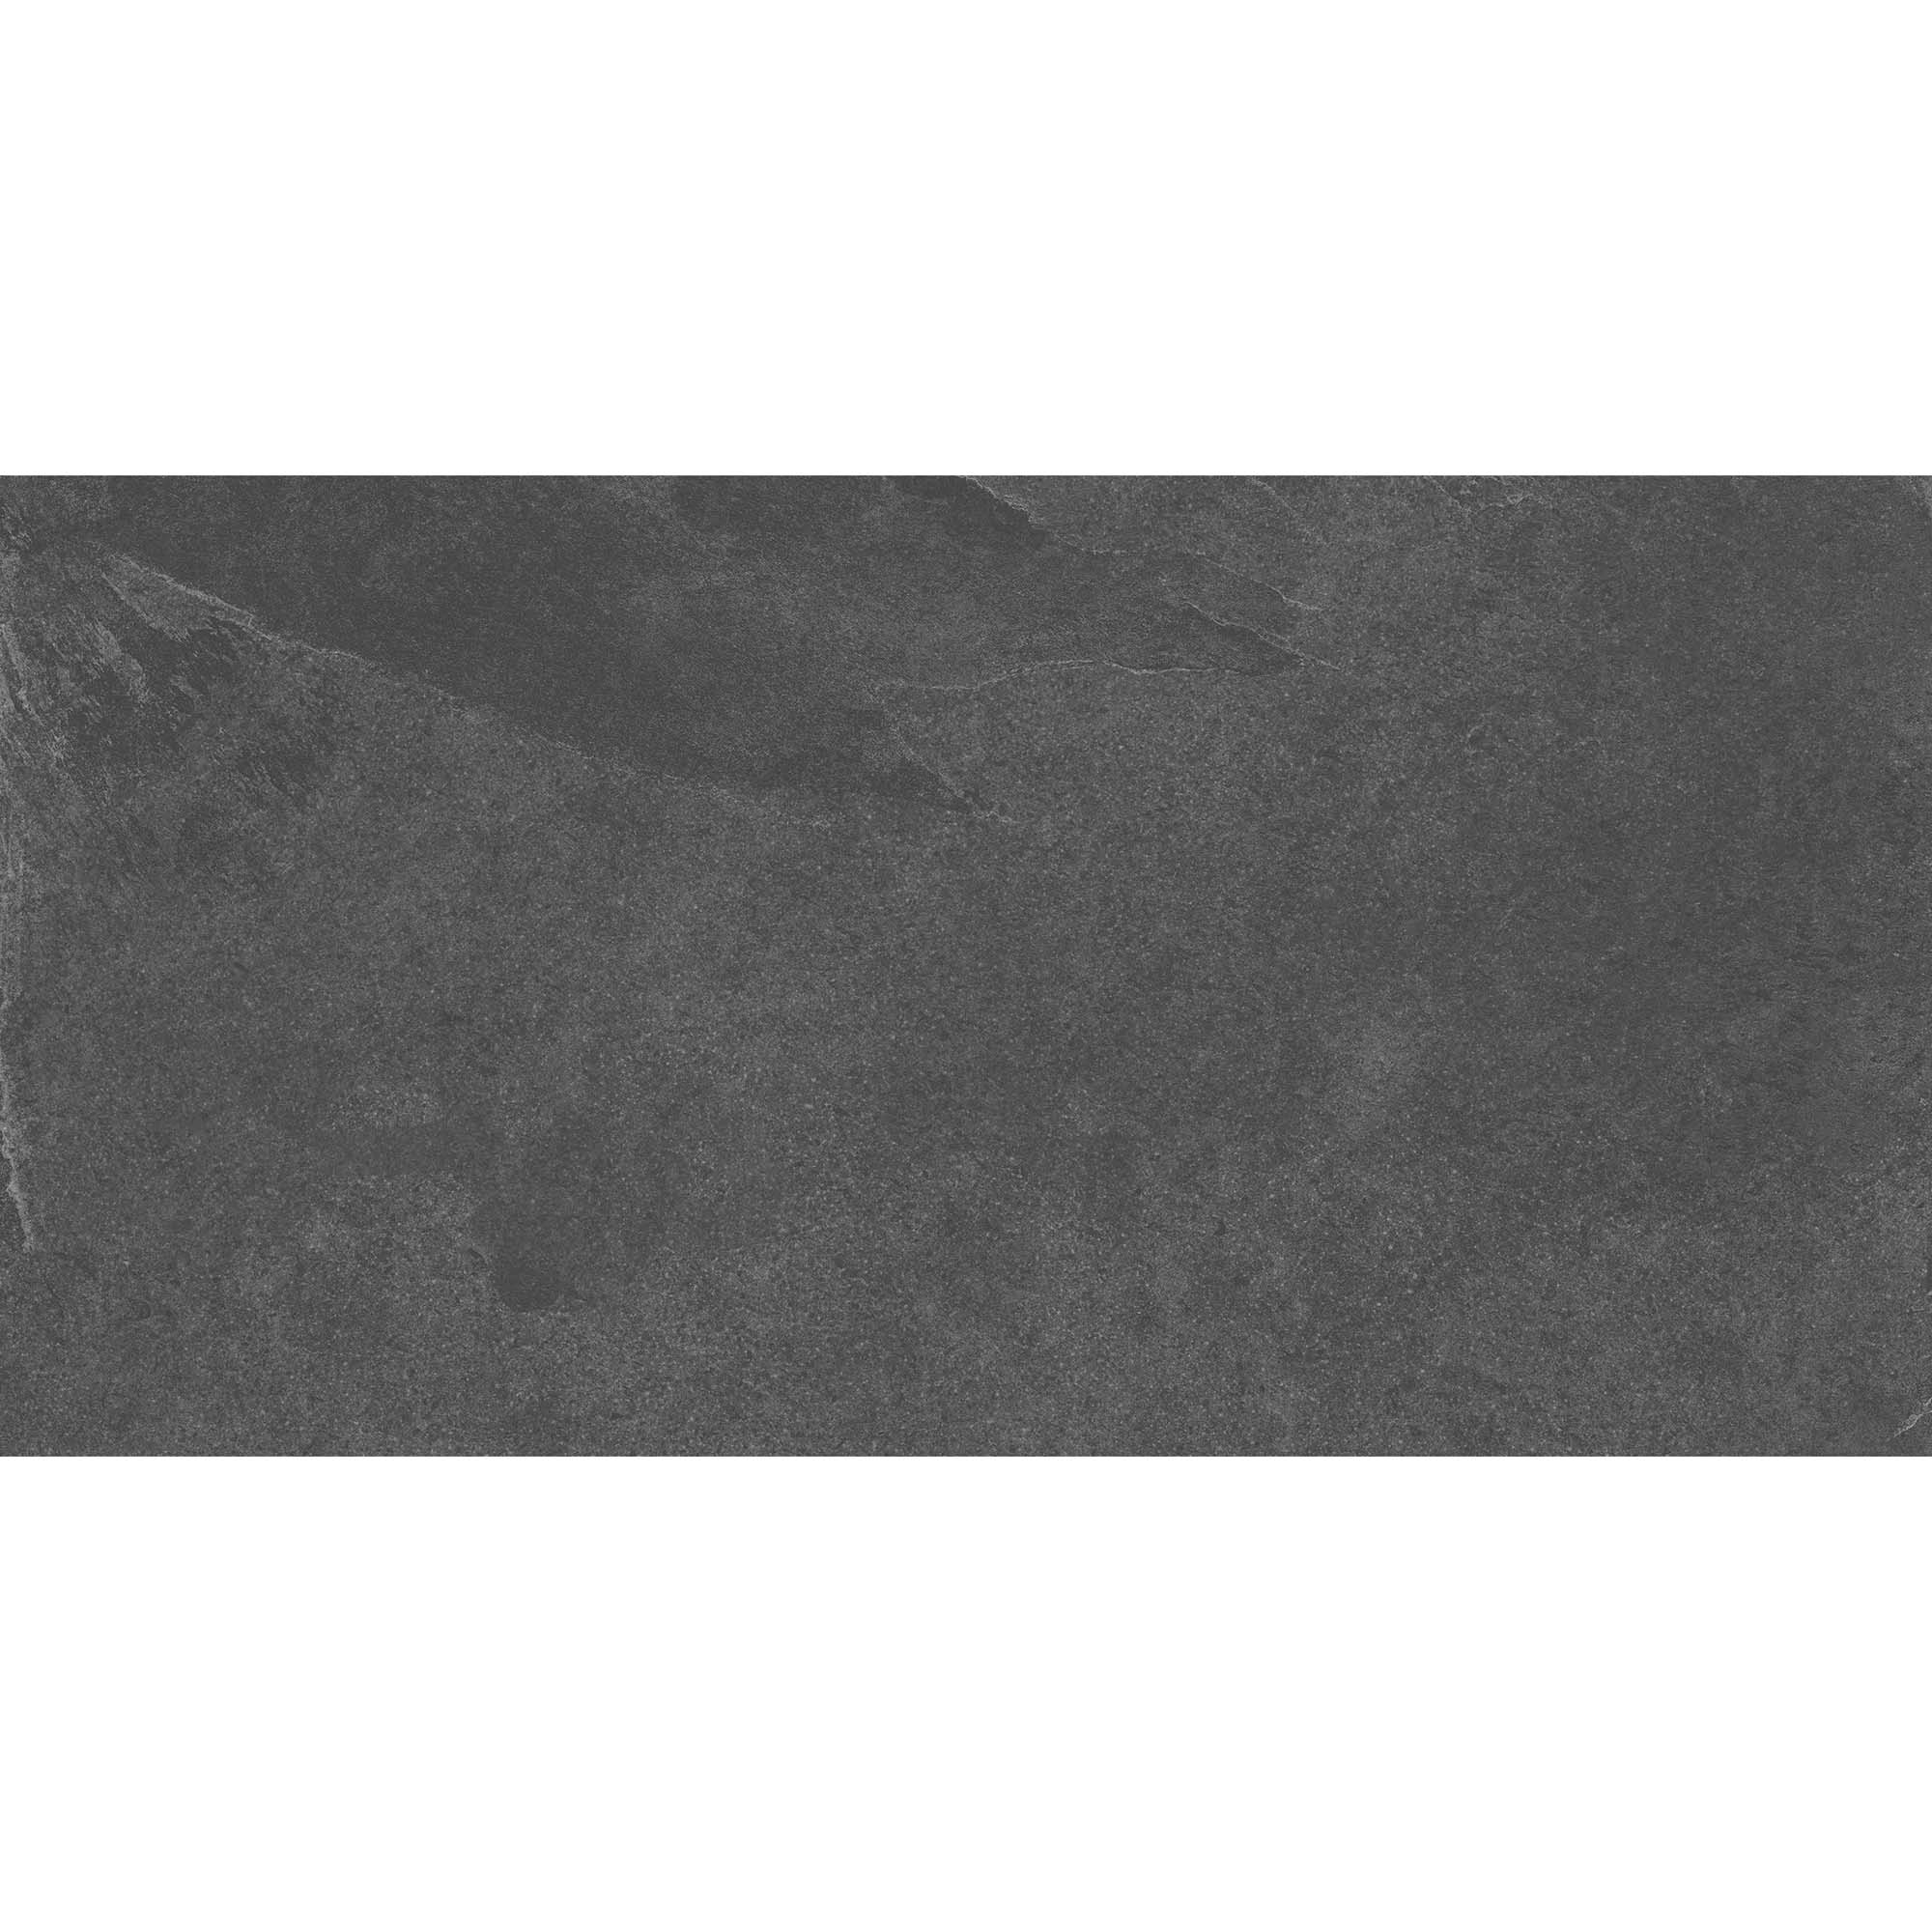 Плитка Estima Terra TE04 неполированный черный 60x120 см плитка estima terra te04 неполированный черный 60x120 см